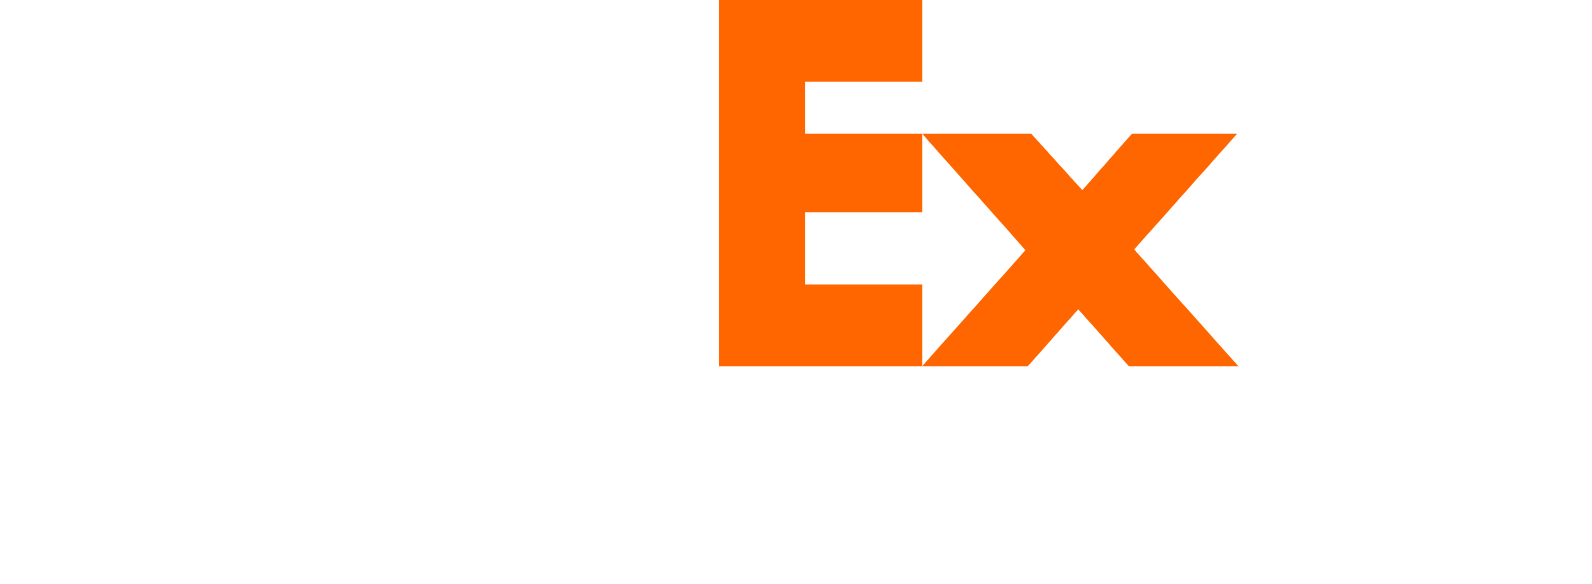 FedEx logo large for dark backgrounds (transparent PNG)